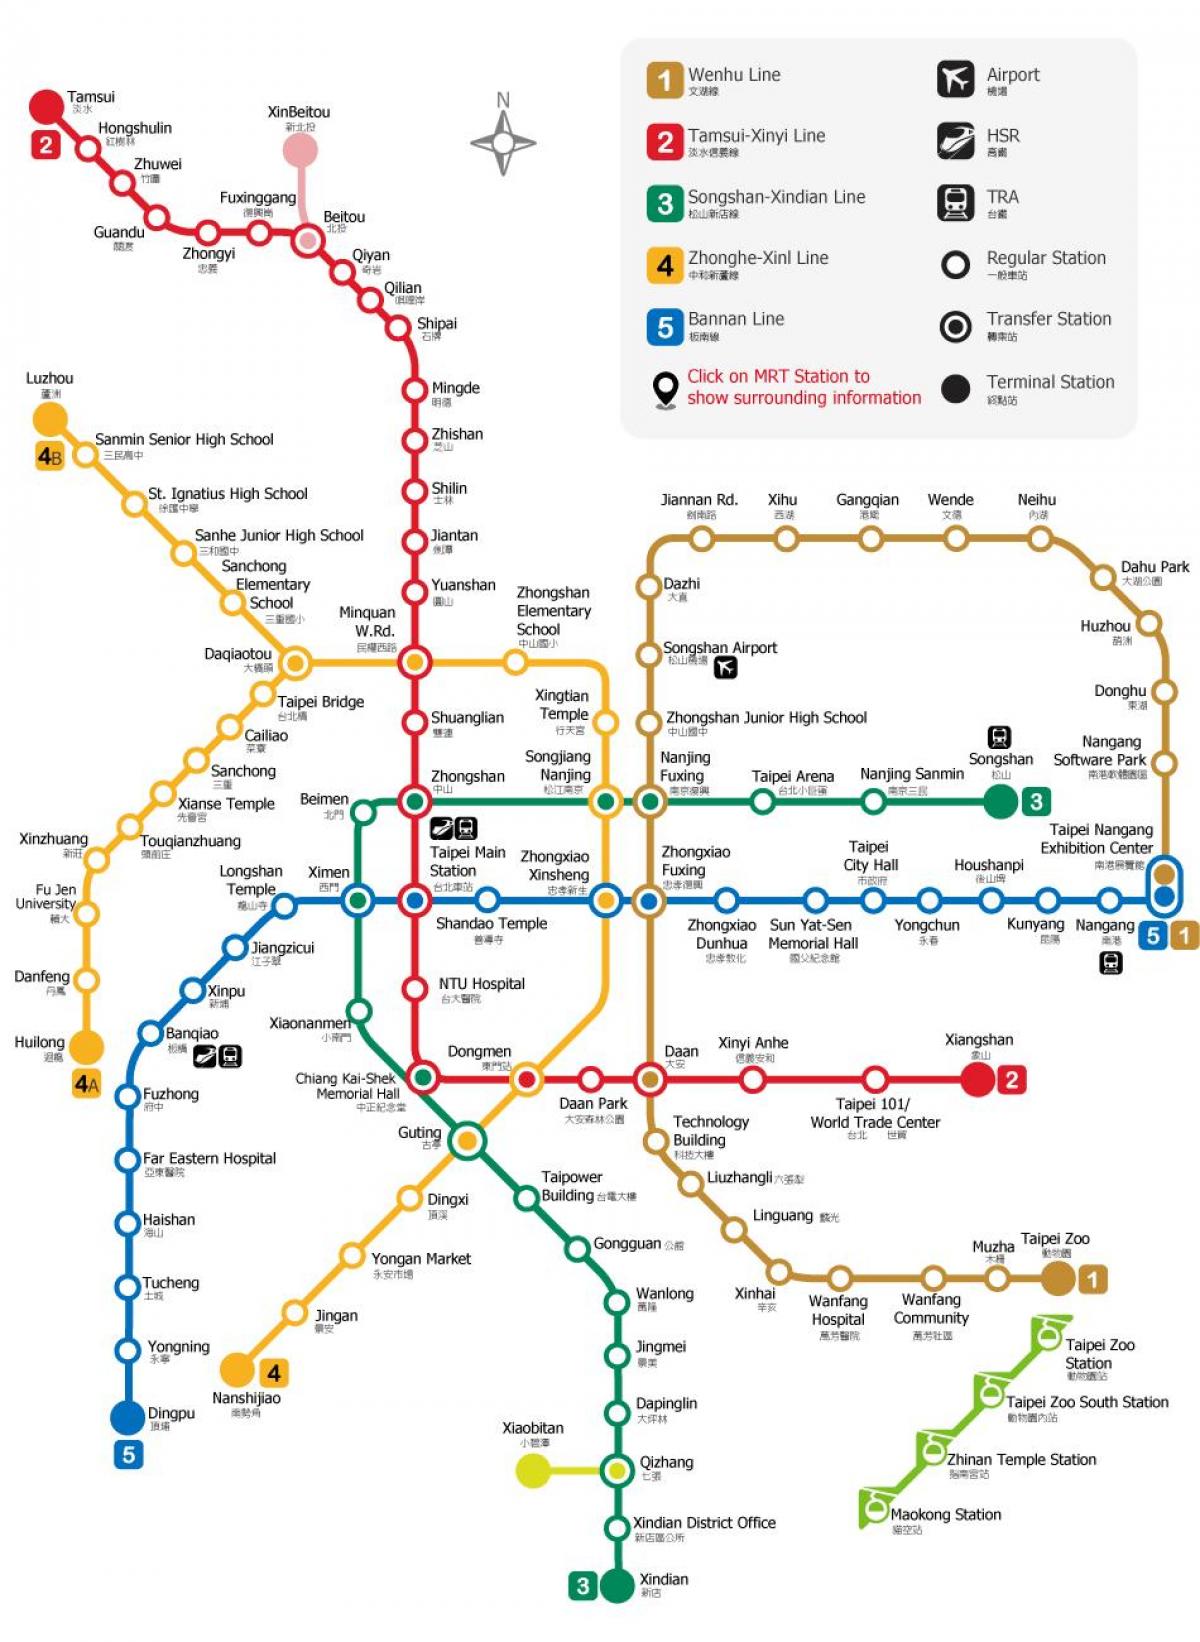 타이페이 metro station 지도